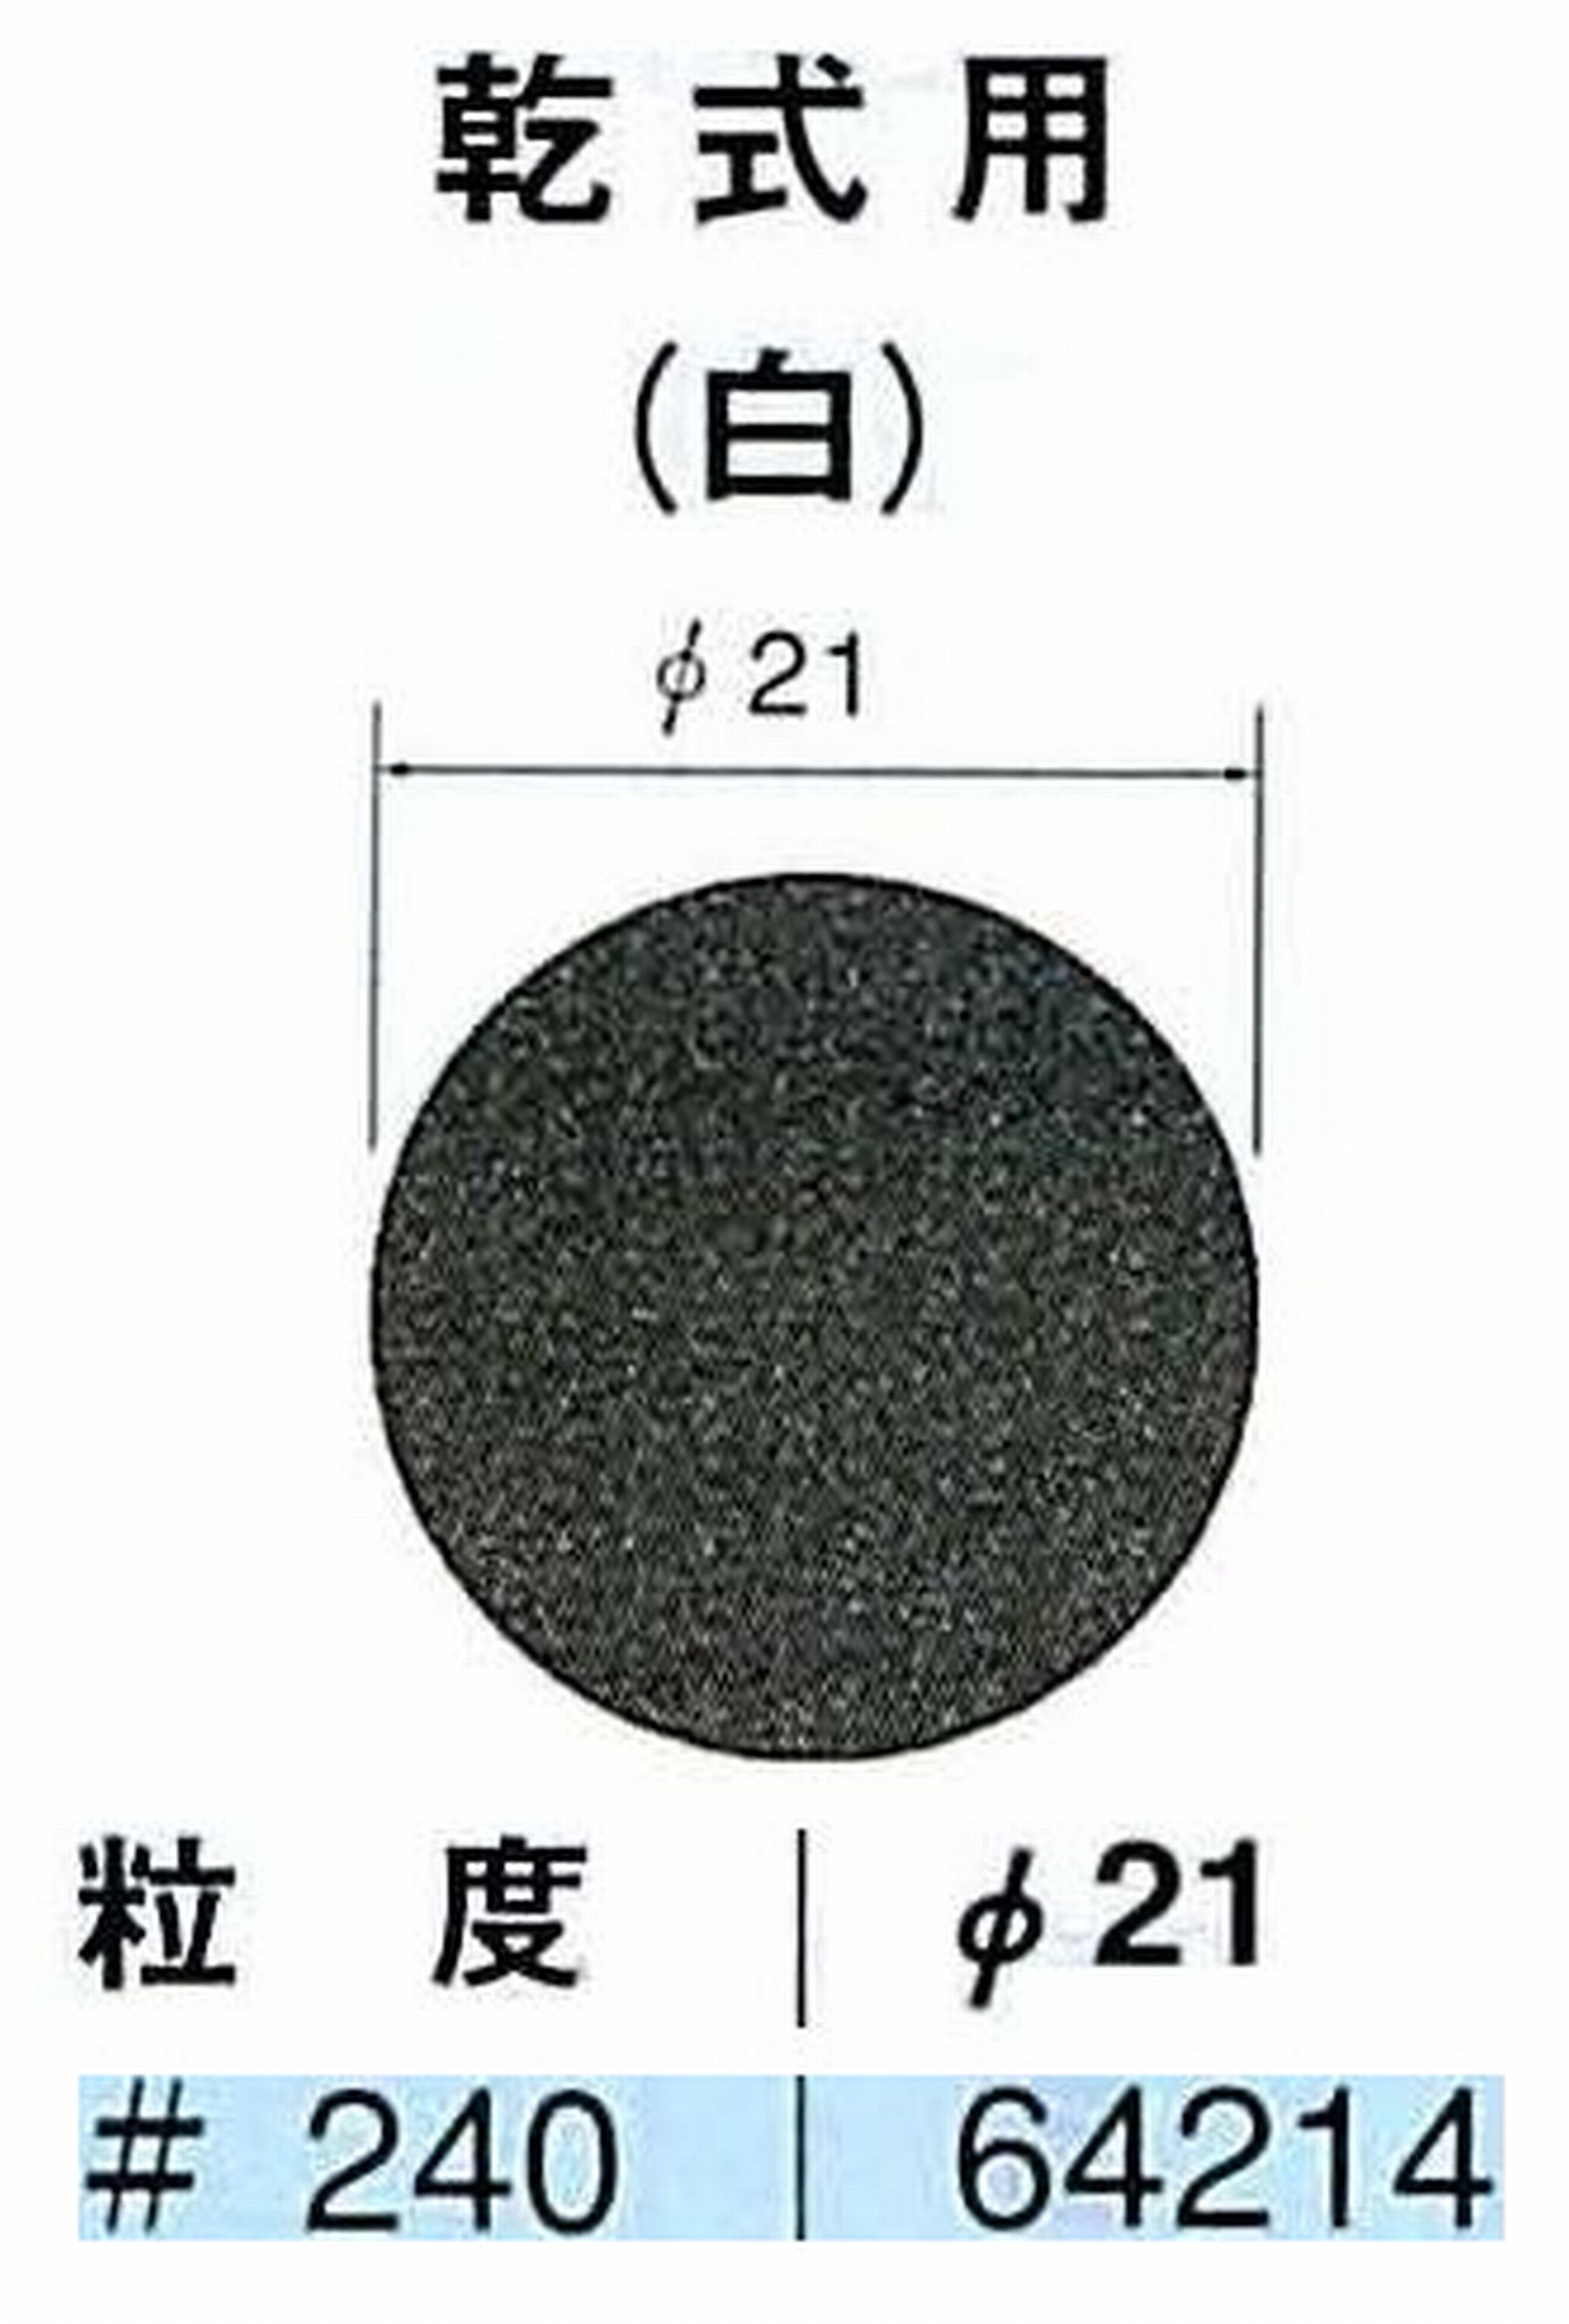 ナカニシ/NAKANISHI アングルグラインダ(電動・エアー) アングルアタッチメント専用工具 サンドペーパーディスク(紙基材タイプ)裏面のり処理 64214